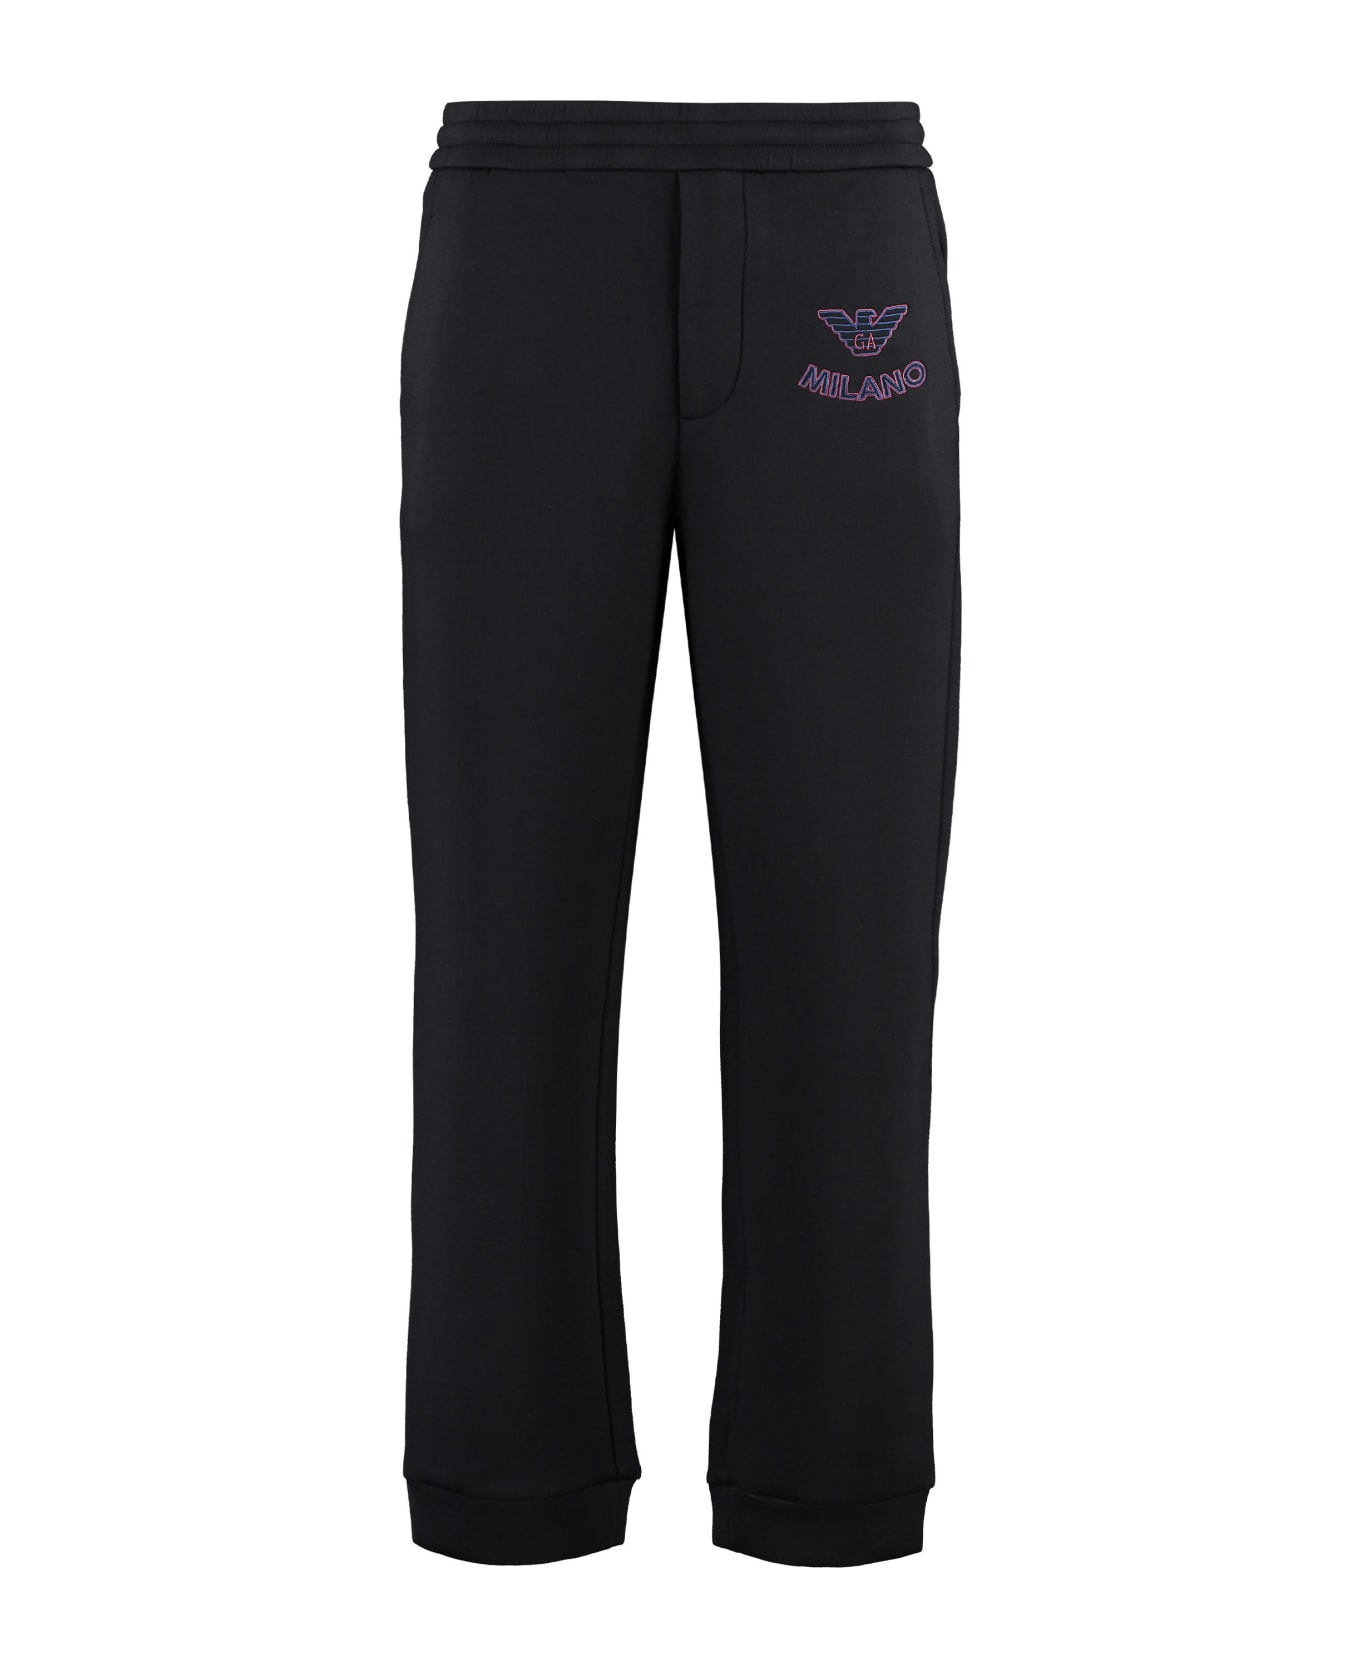 Emporio Armani Embroidered Sweatpants - black